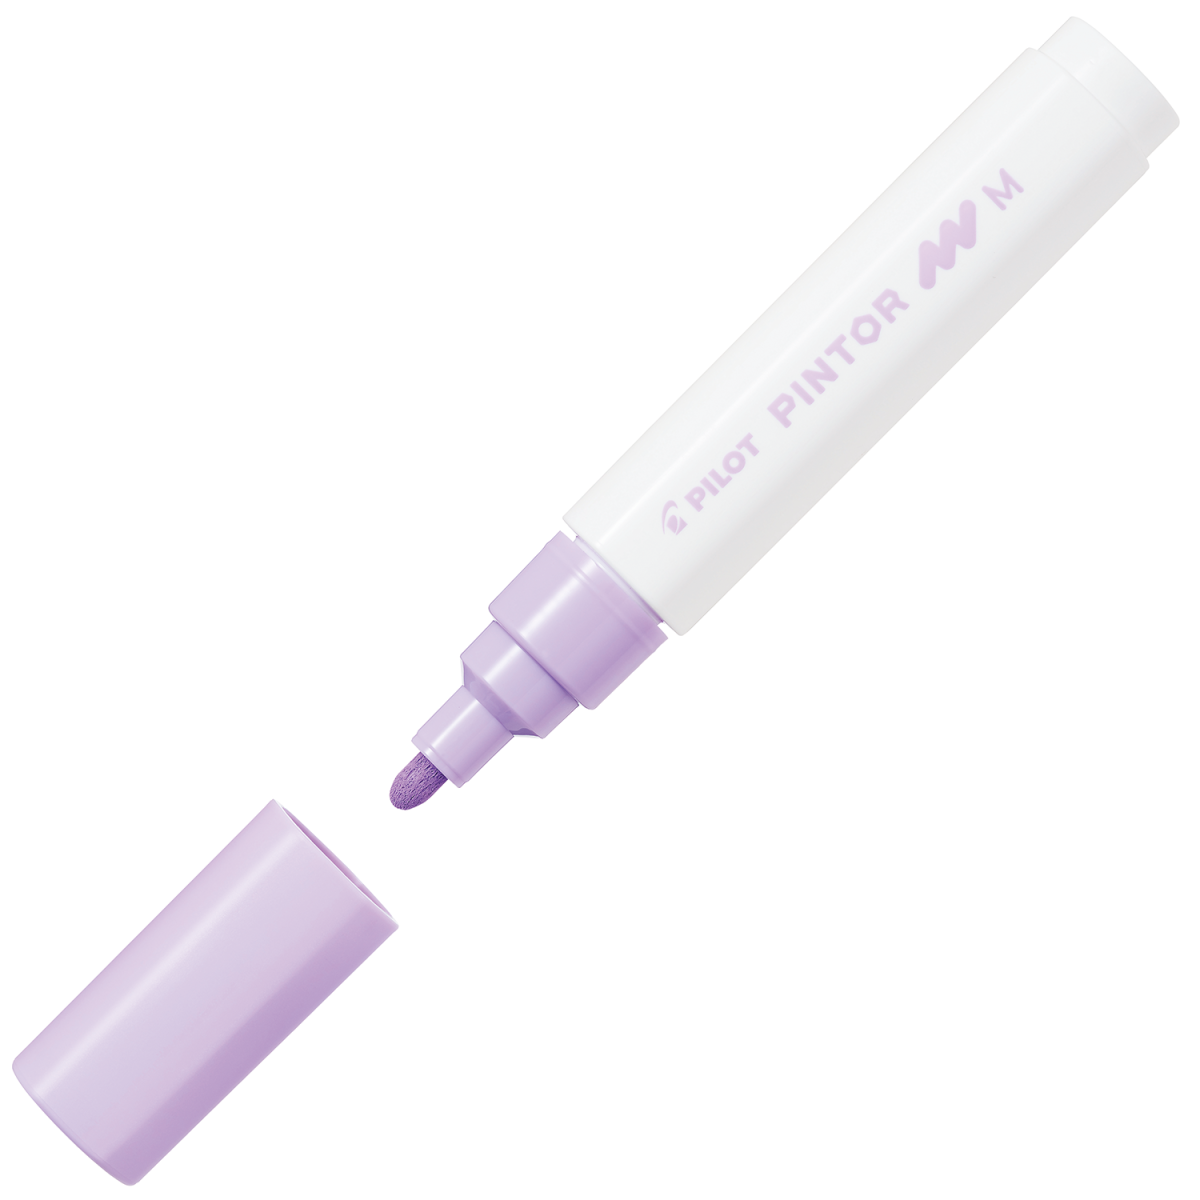 Pilot Pintor Paint Marker - Medium 1.4mm - Pastel Violet